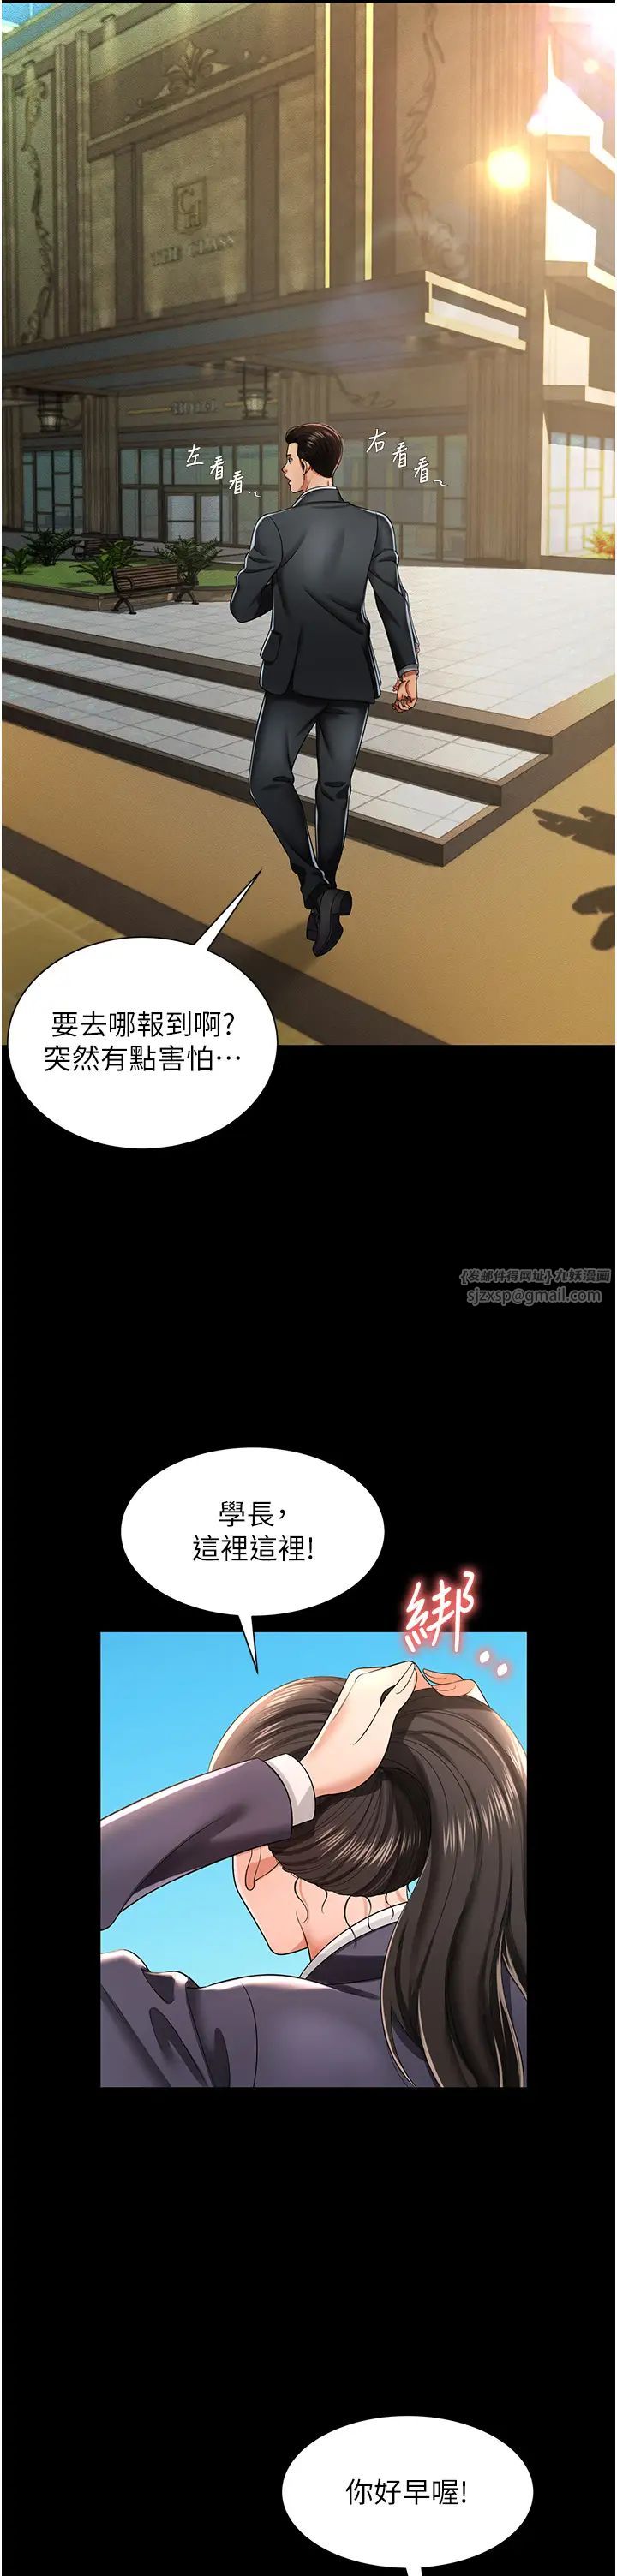 《萌鬼飯店實錄》在线观看 第1话-高级饭店的桃色祕密?! 漫画图片27